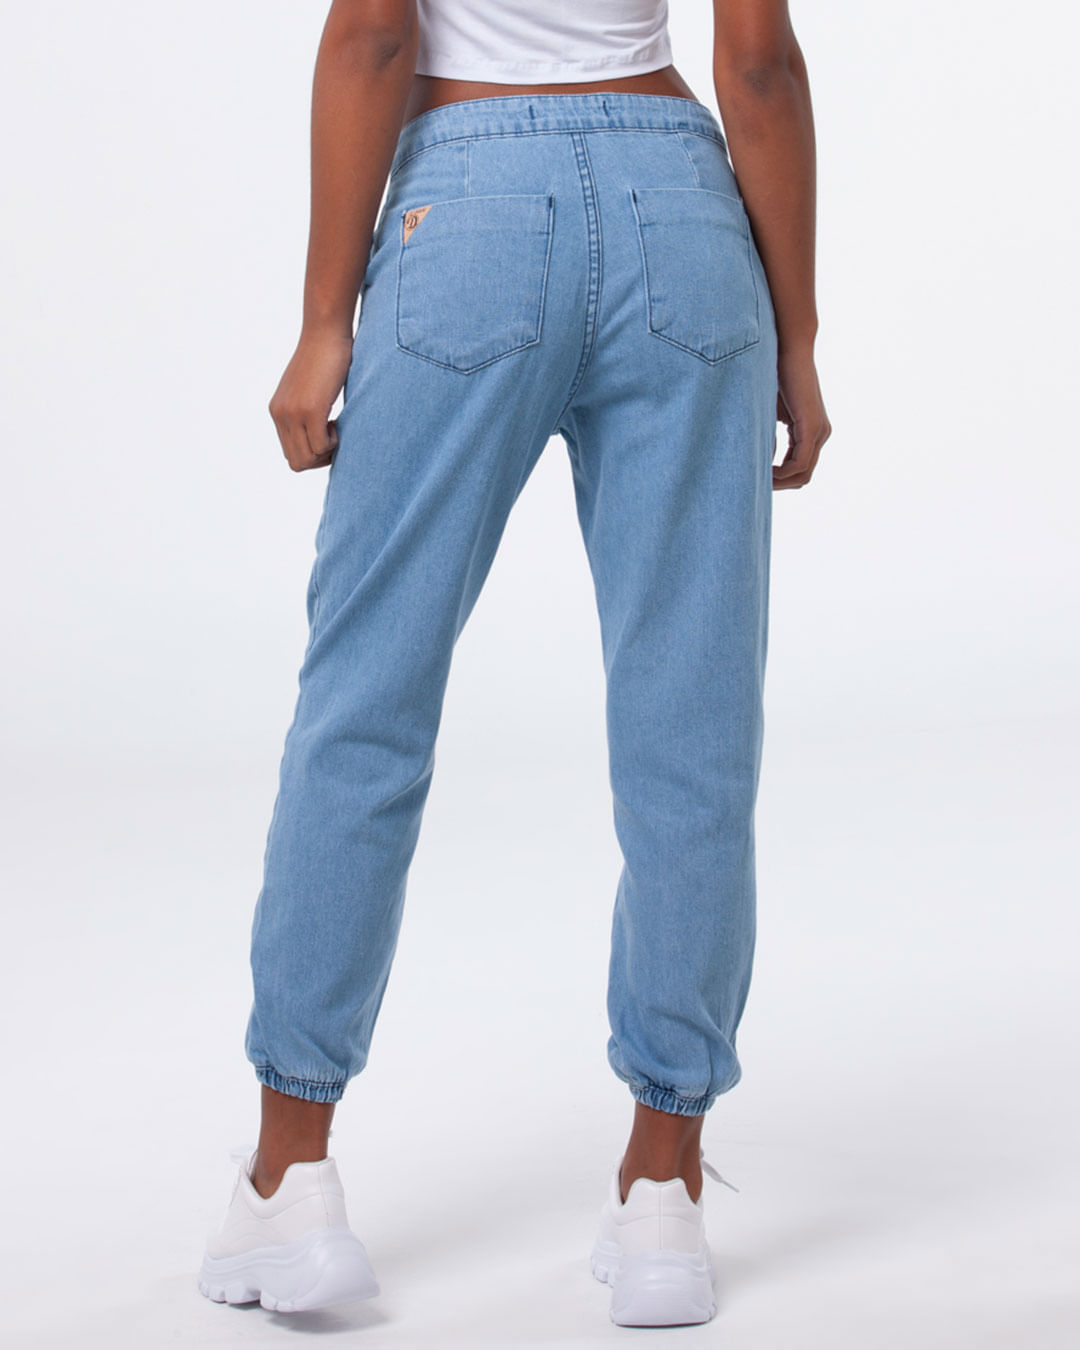 Calca-Jeans-Feminina-Jogger-Cintura-Baixa-Azul-Claro